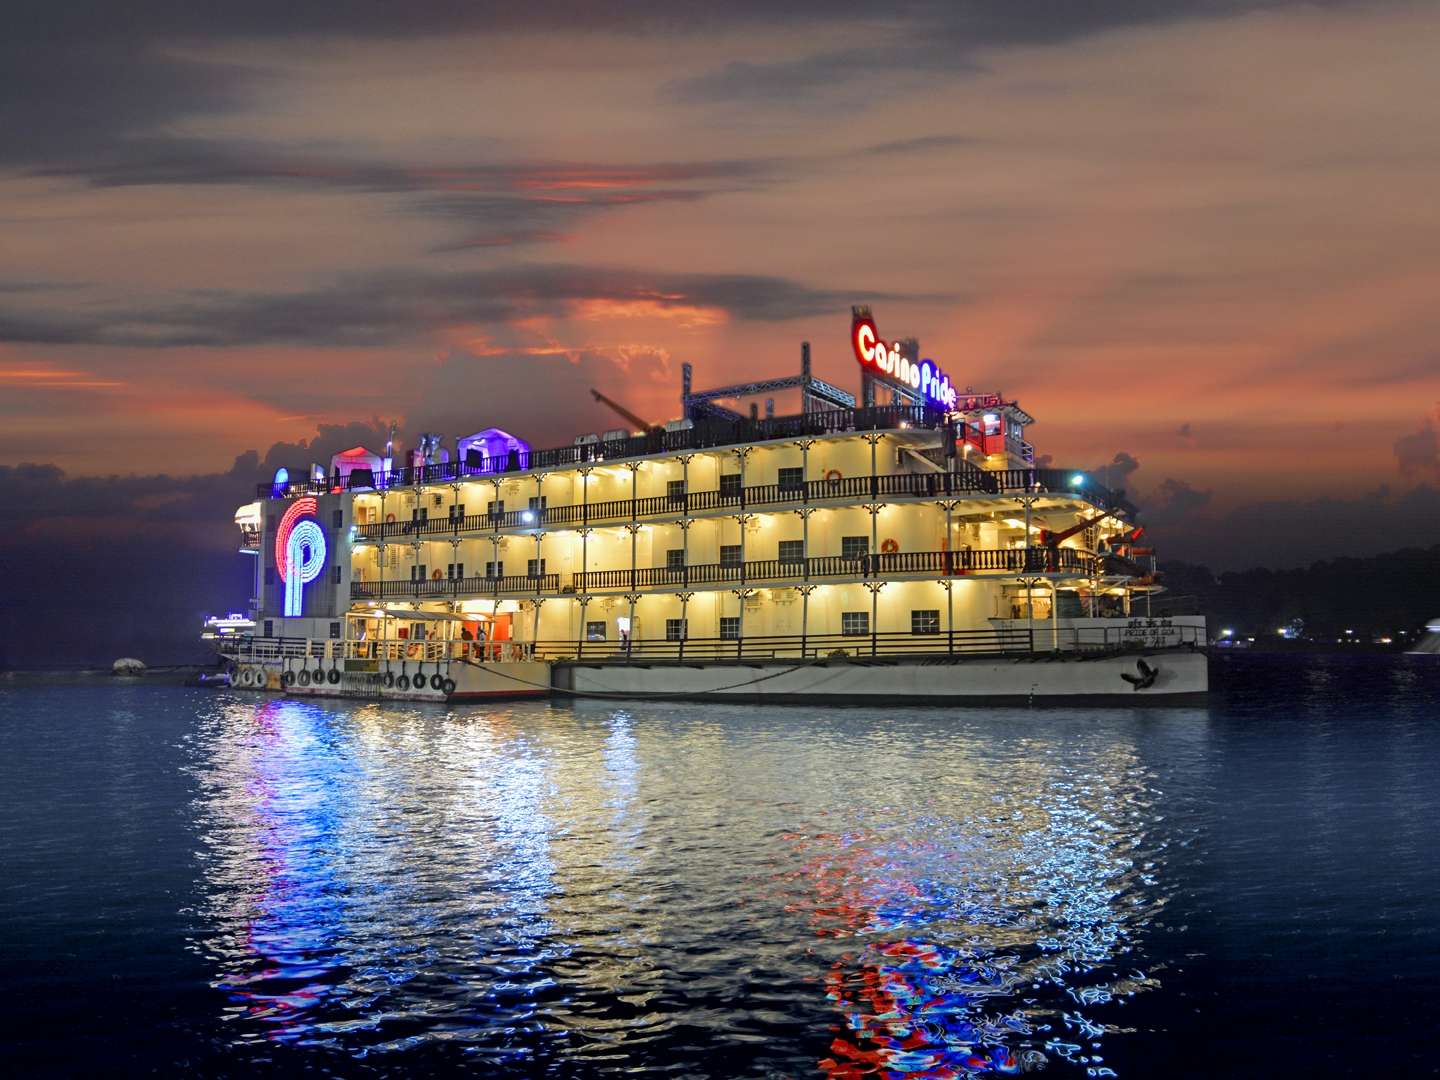 Casino Cruise At Goa